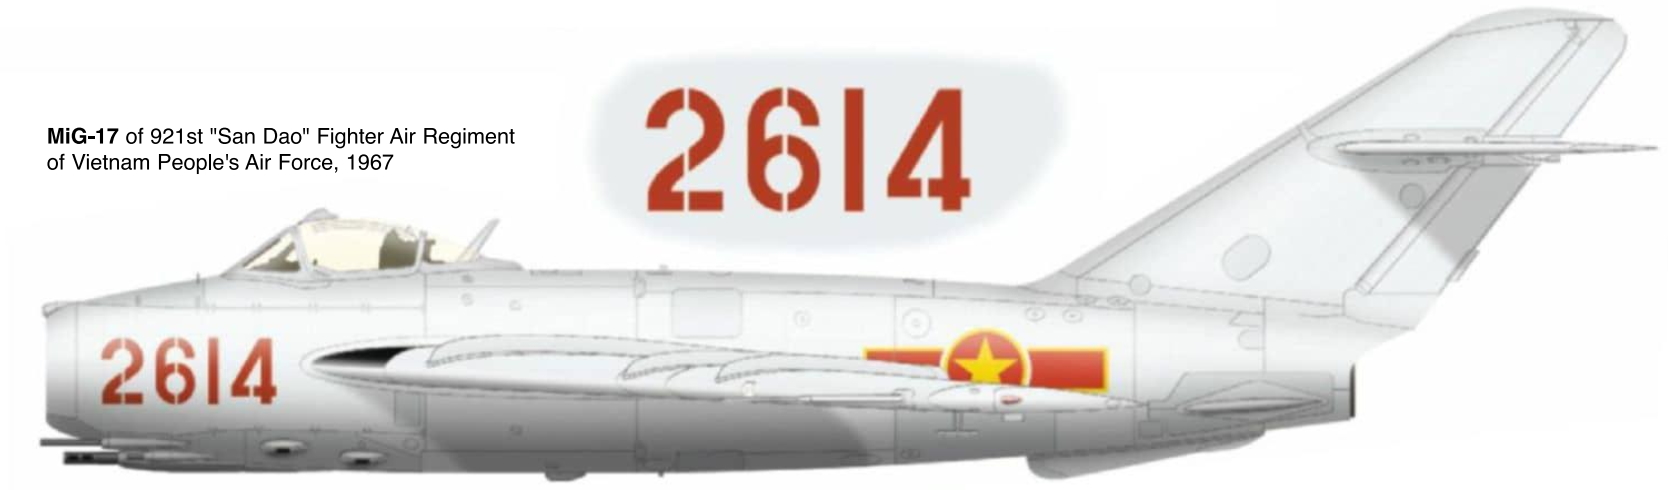 1706507113 699 MiG 17 in Vietnam